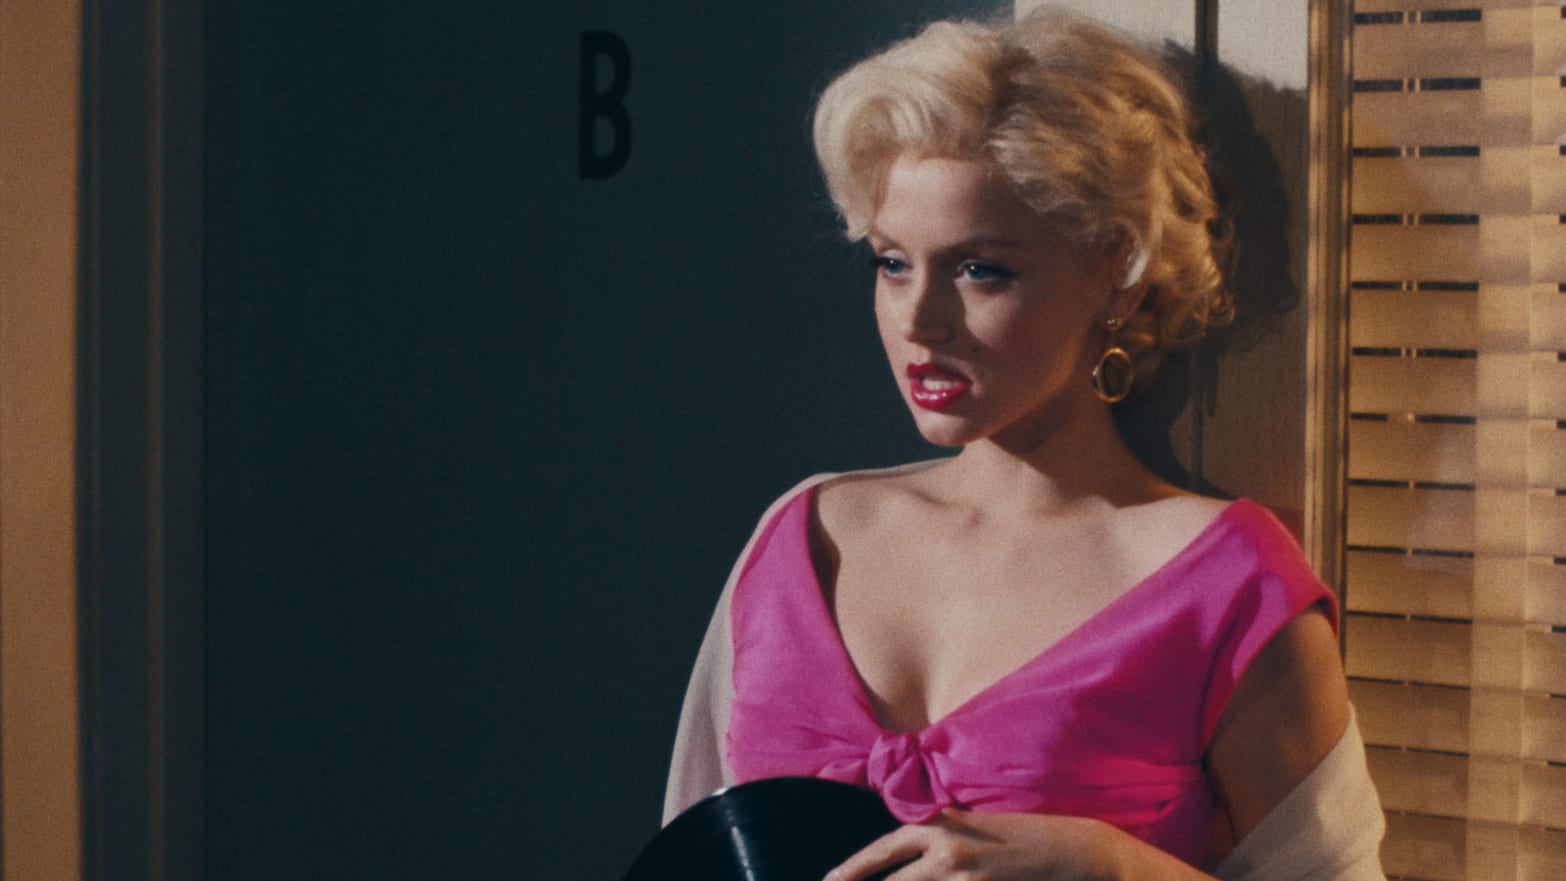 The Most Horrifying Scene in Blonde Is JFKs Rape of Marilyn Monroe pic